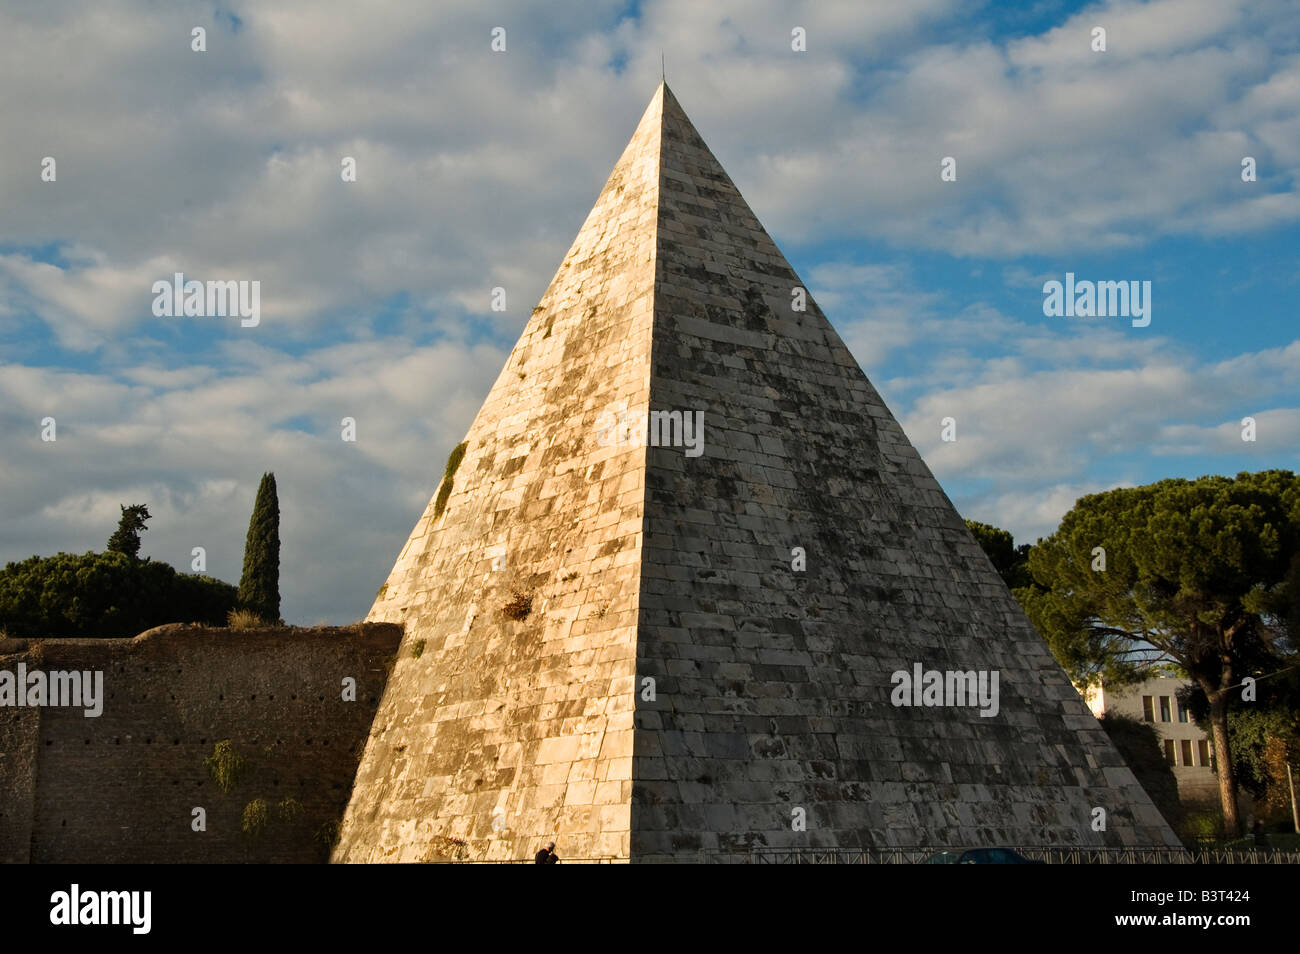 The Egyptian style tomb Piramide di Caius Cestius pyramid in Aventine ...